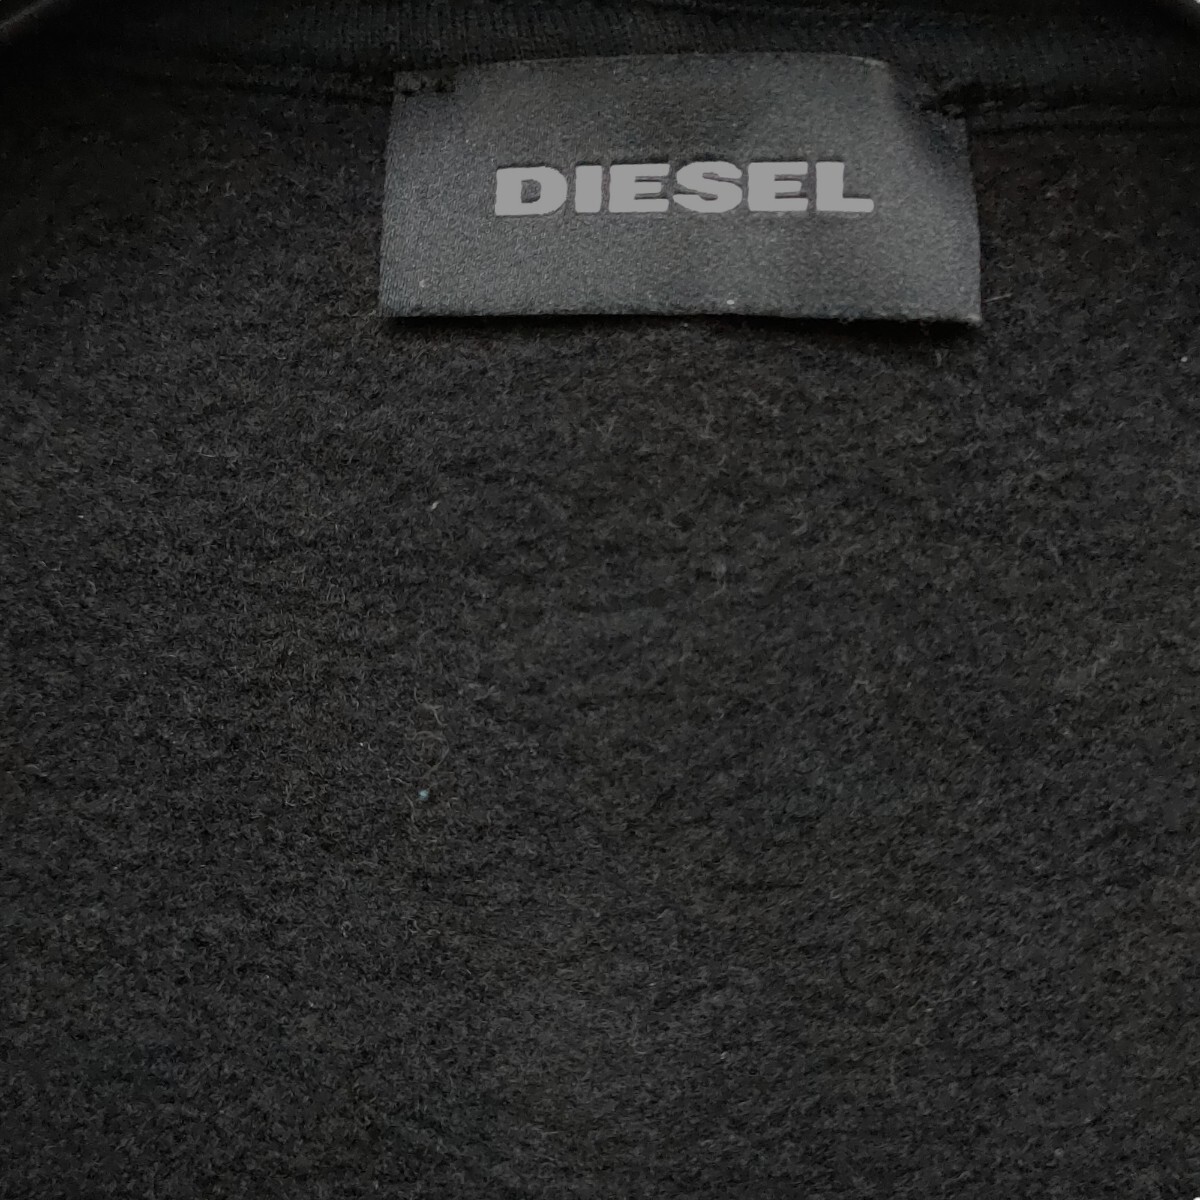 【美品】DIESEL /ディーゼル フルジップパーカー フードジャケット 裏起毛 BOYS14サイズ ブラック ゴールドロゴ 国内正規品 I-3731_画像4